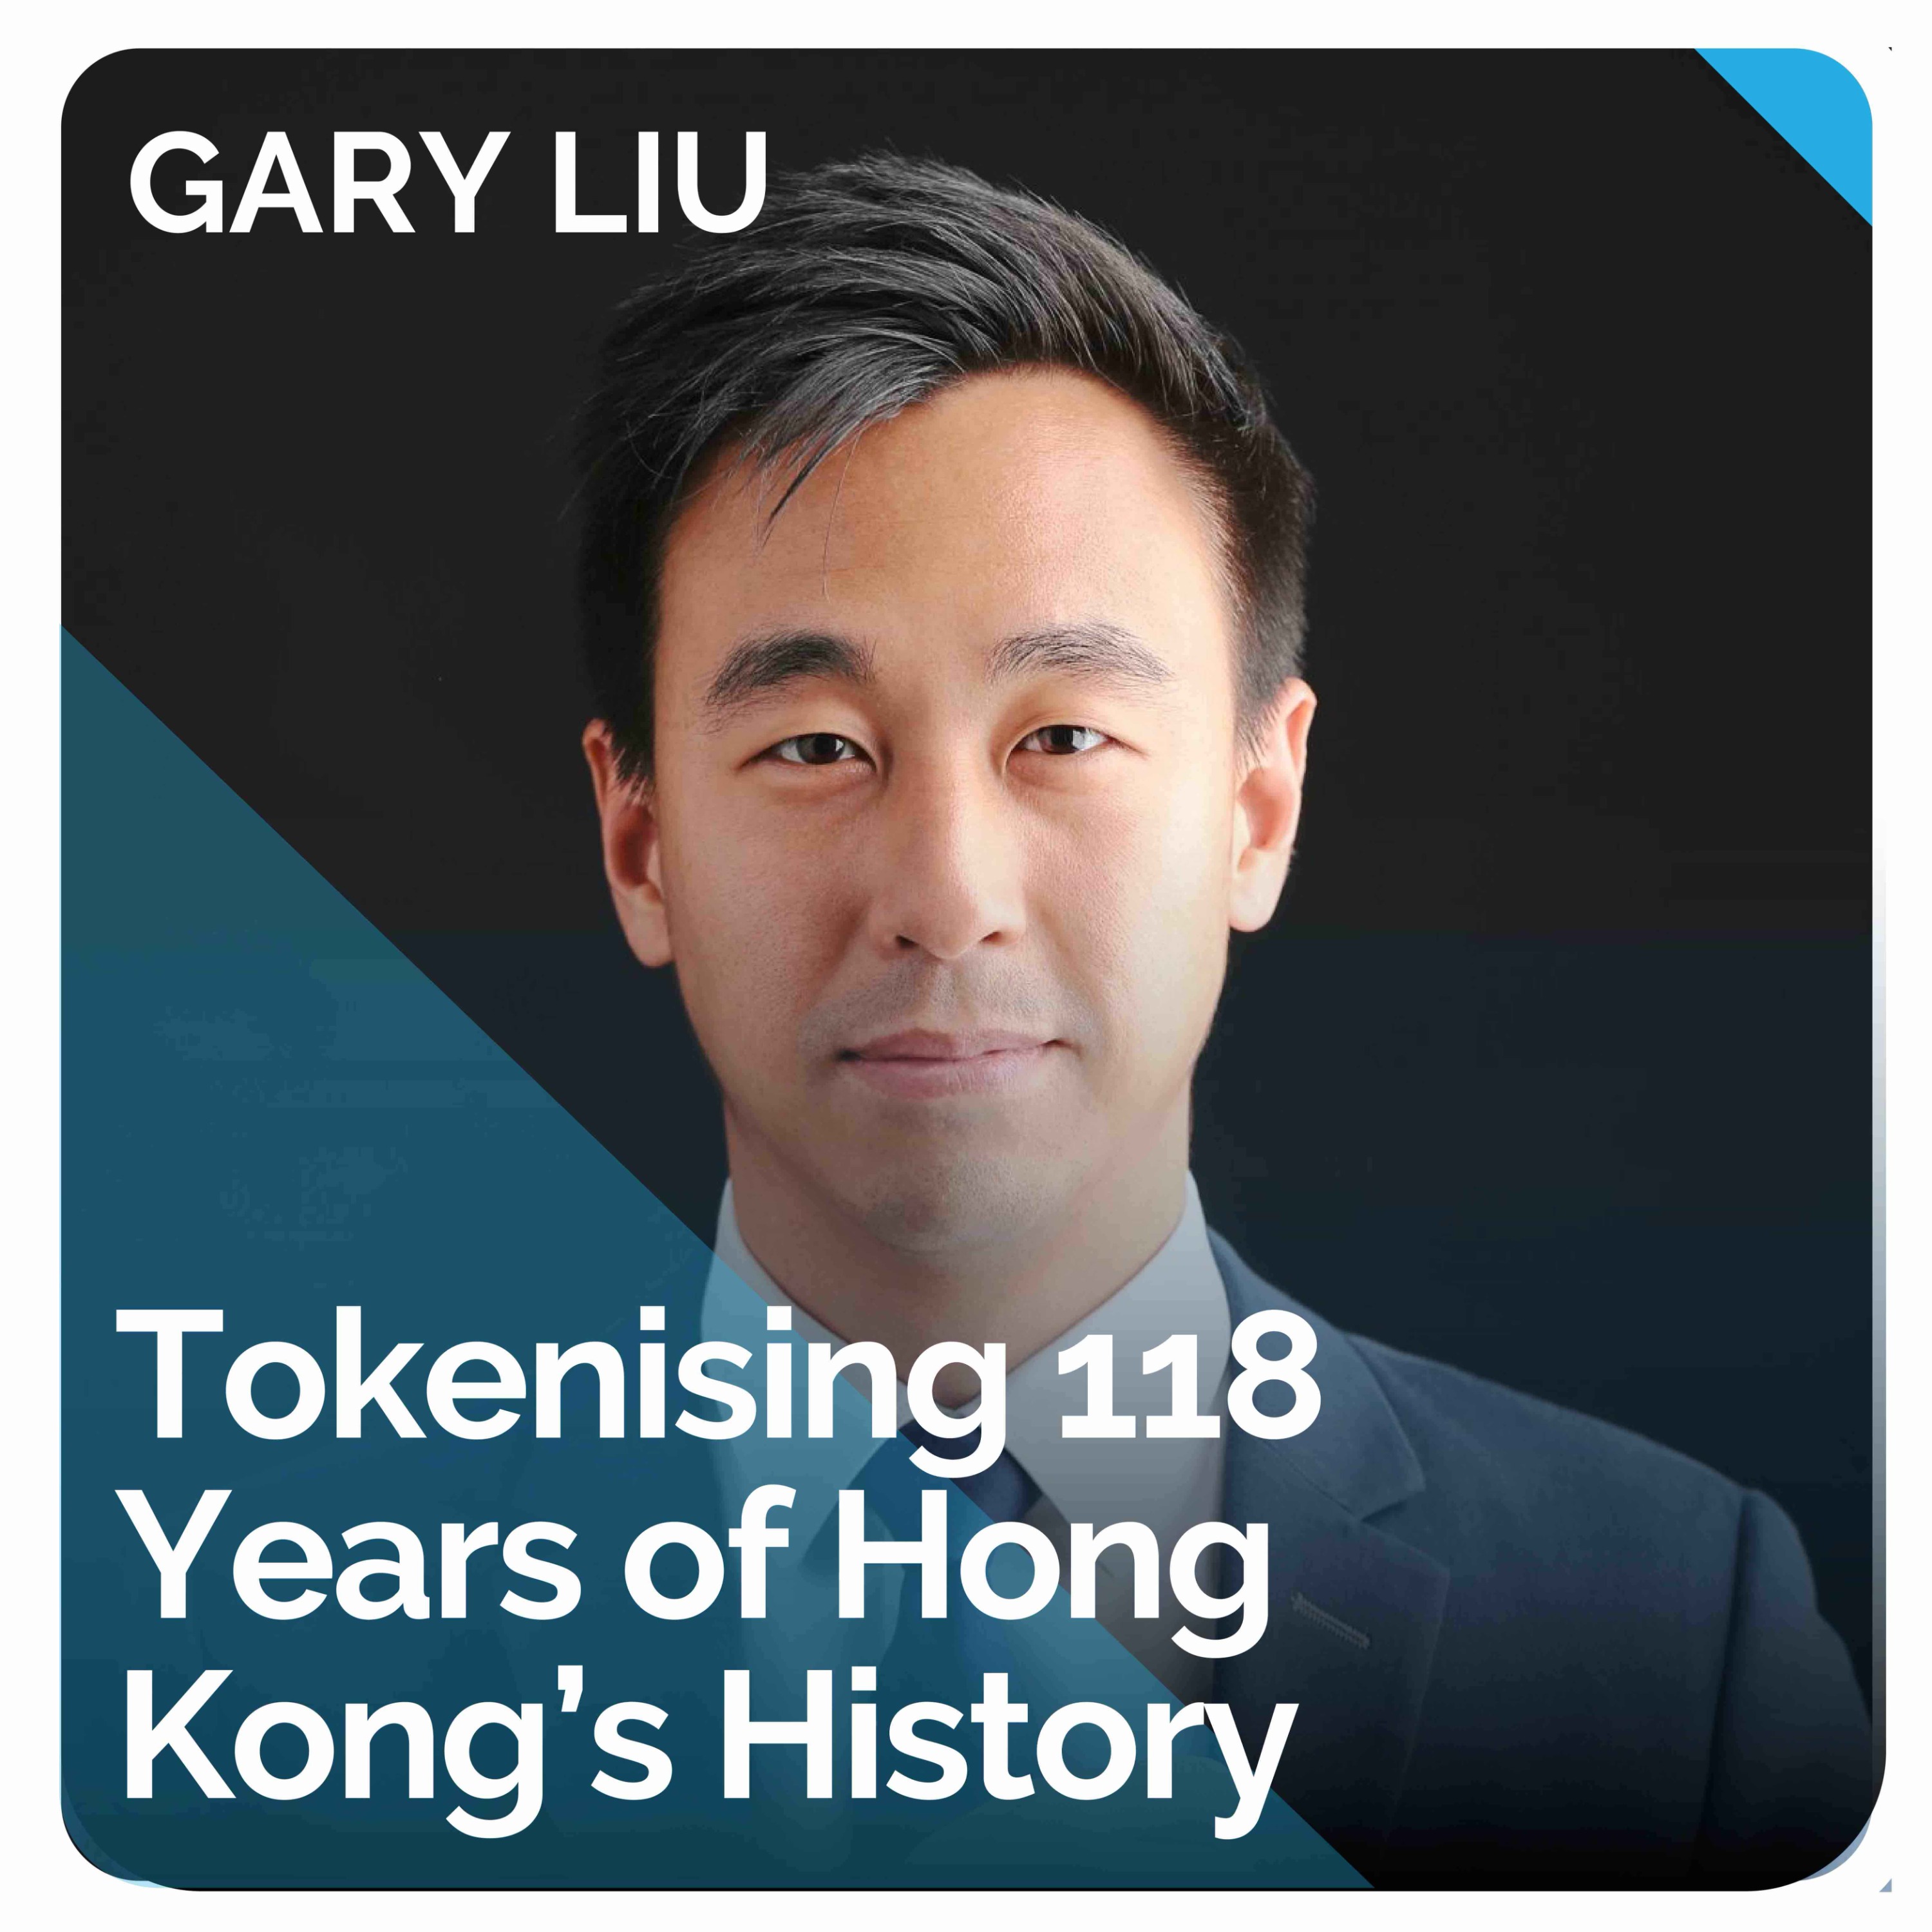 Tokenising 118 Years of Hong Kong’s History (ft. Gary Liu)